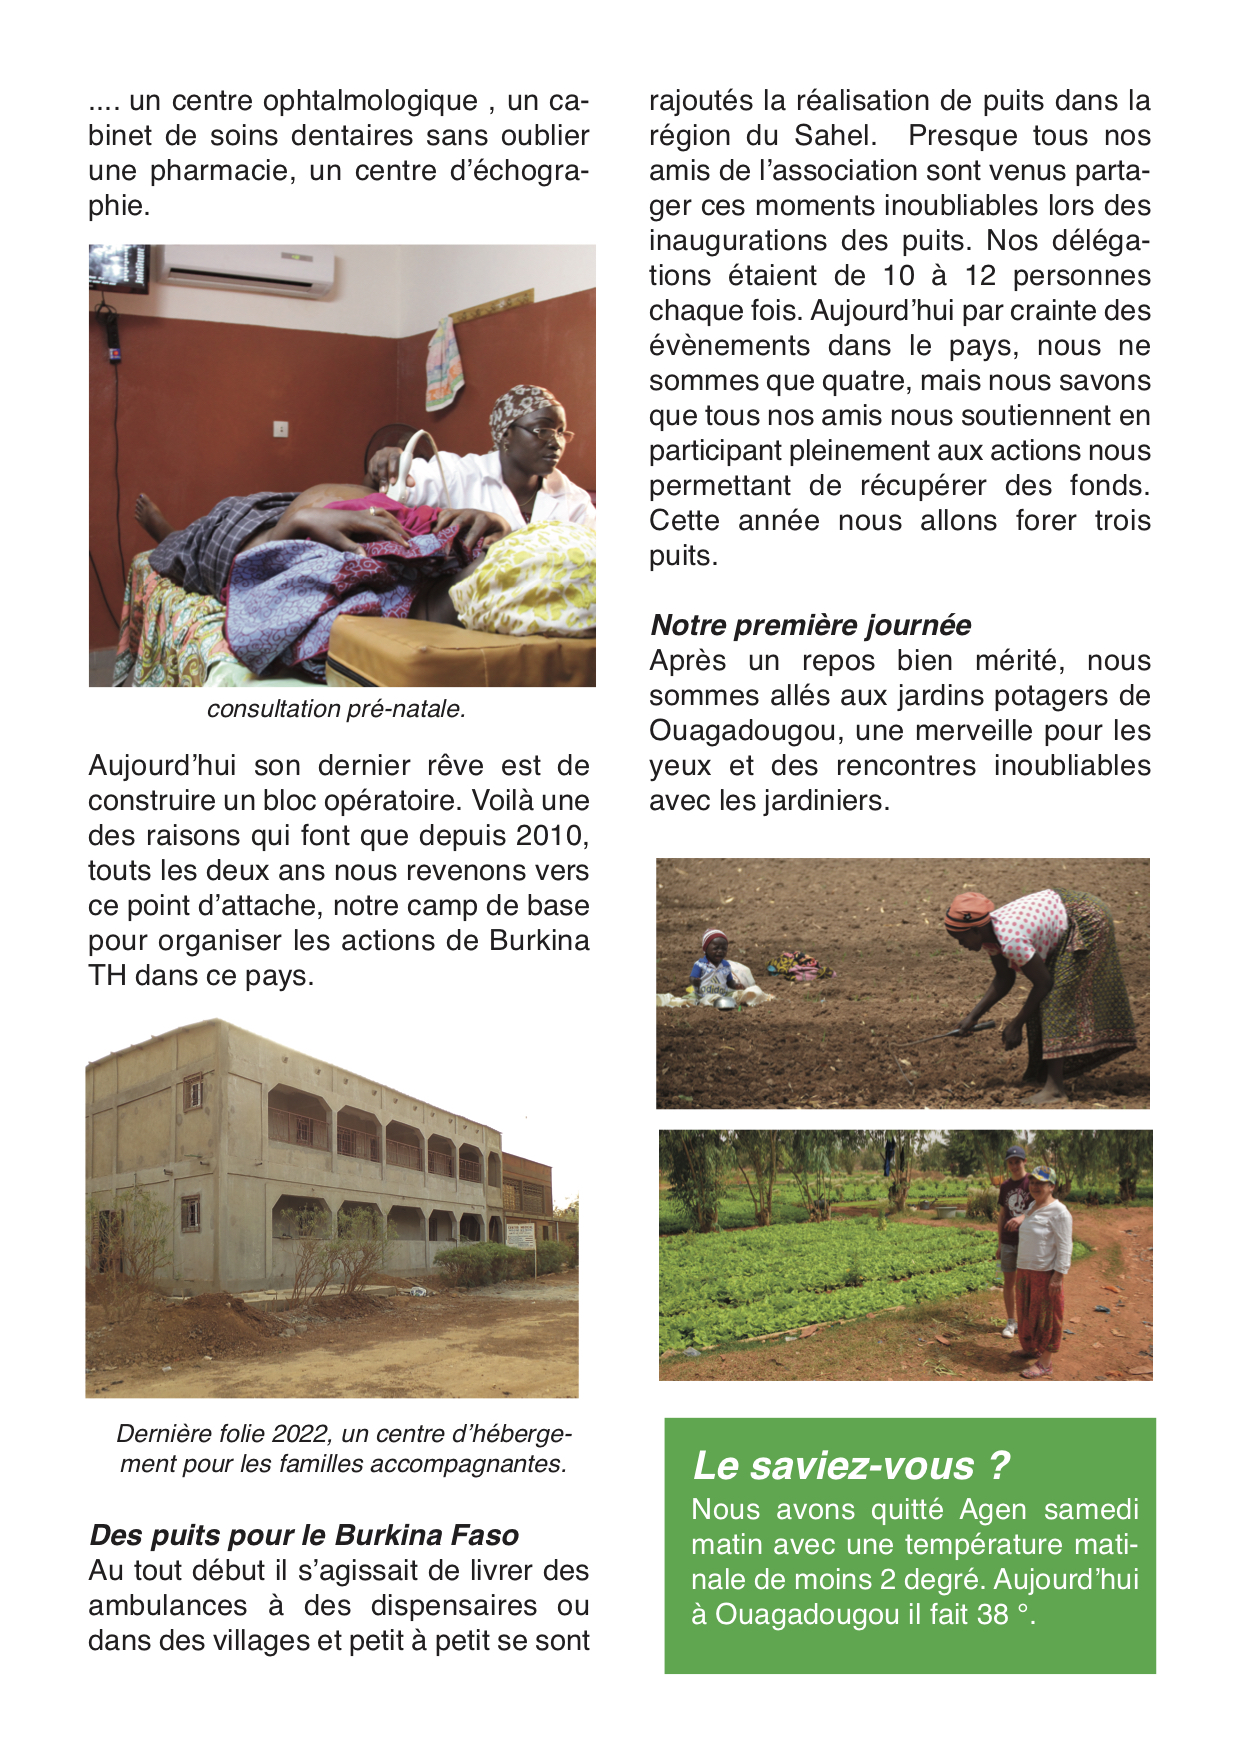 Journal de voyage au Burkina Faso - Dimanche 27 février 2022 - page 2